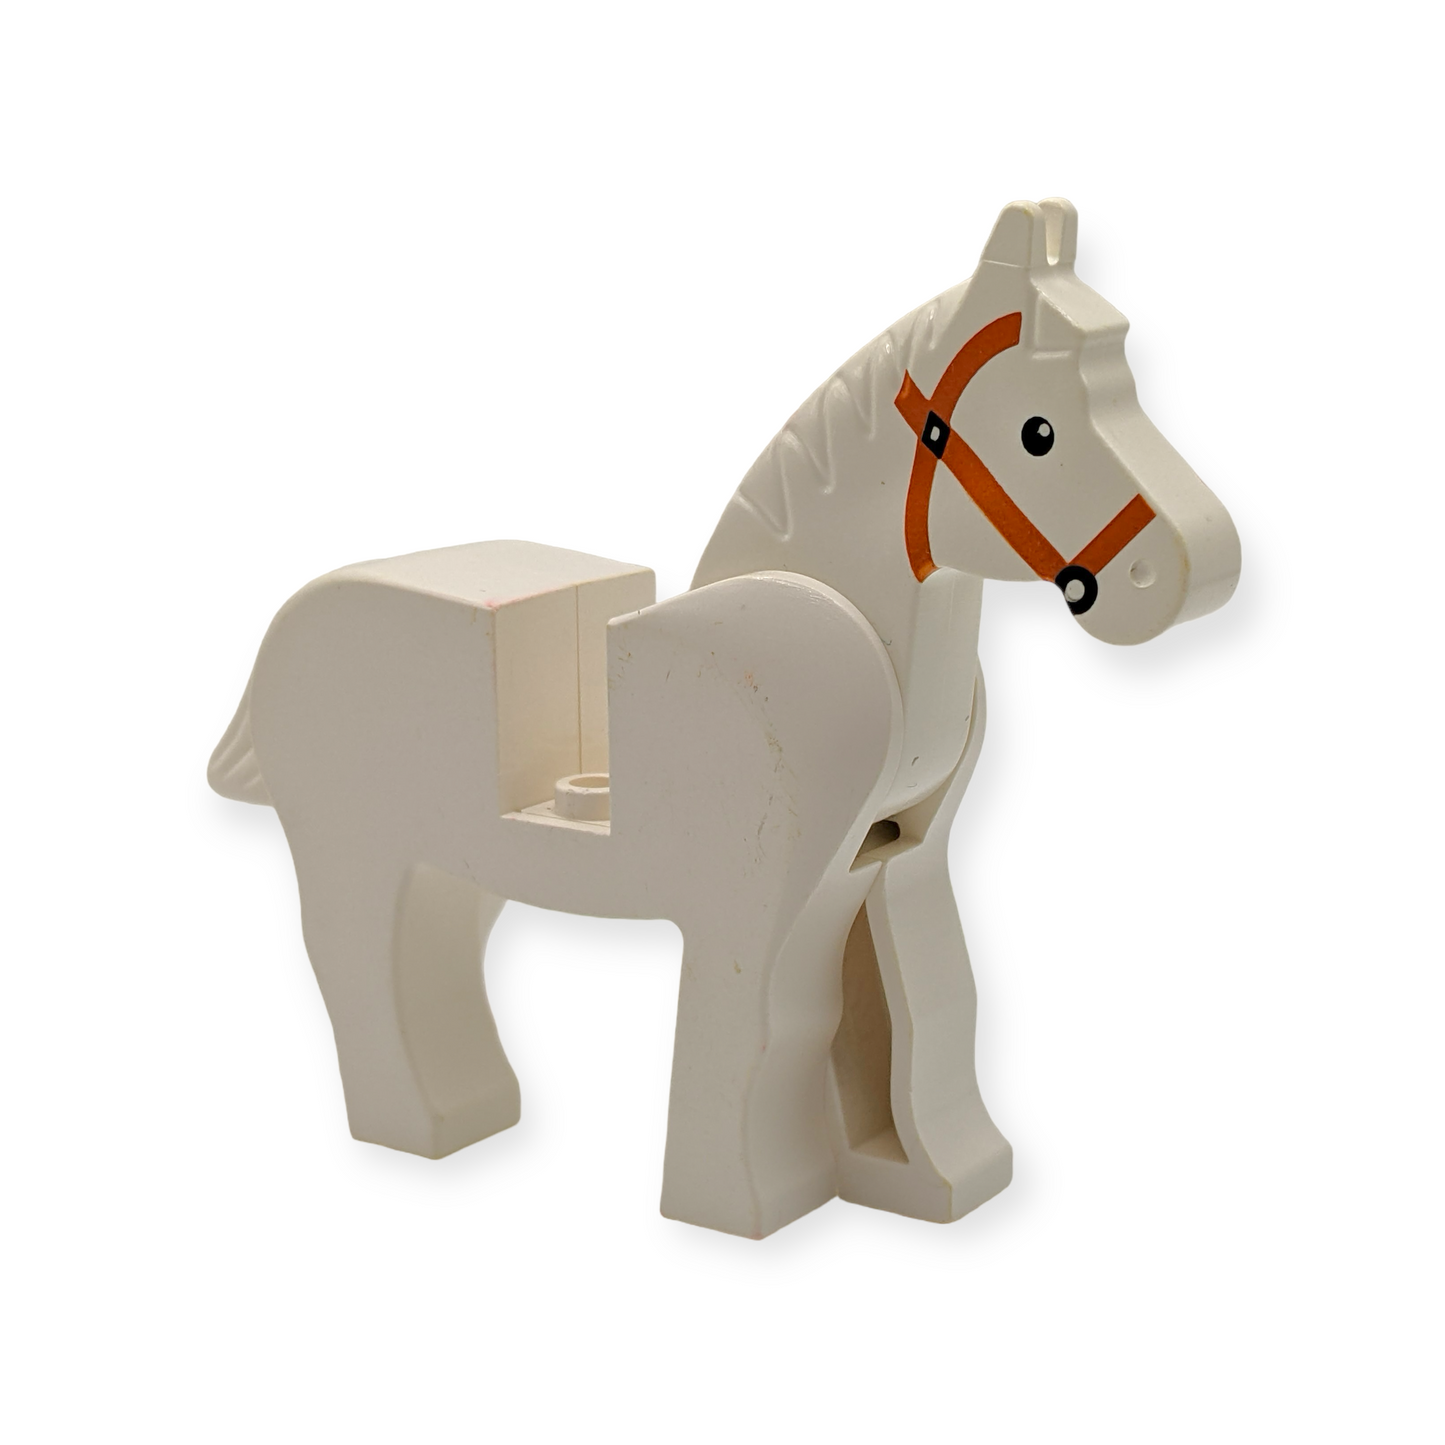 LEGO Horse with Black Eyes, White Pupils